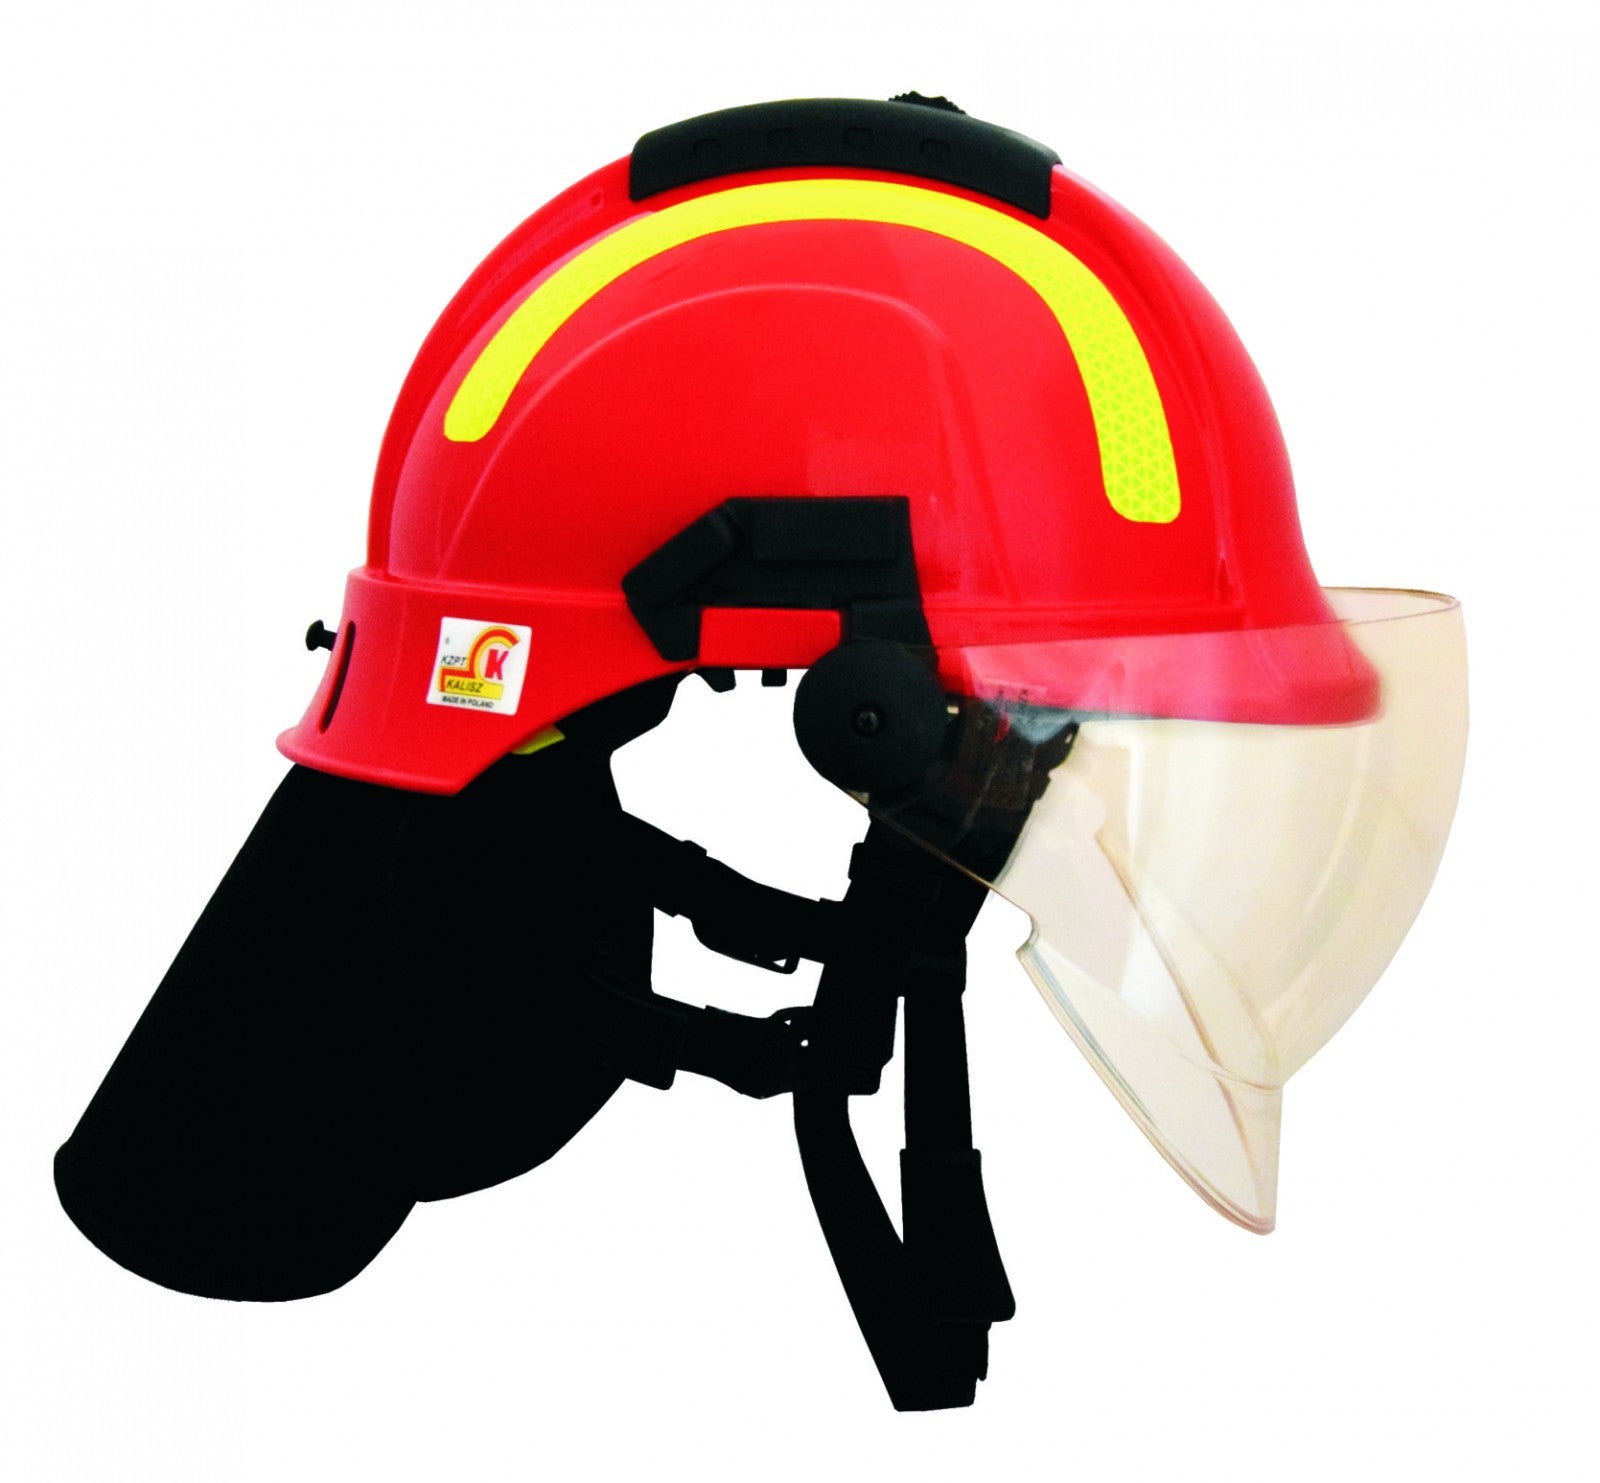 Fire helmet VAN- 5503